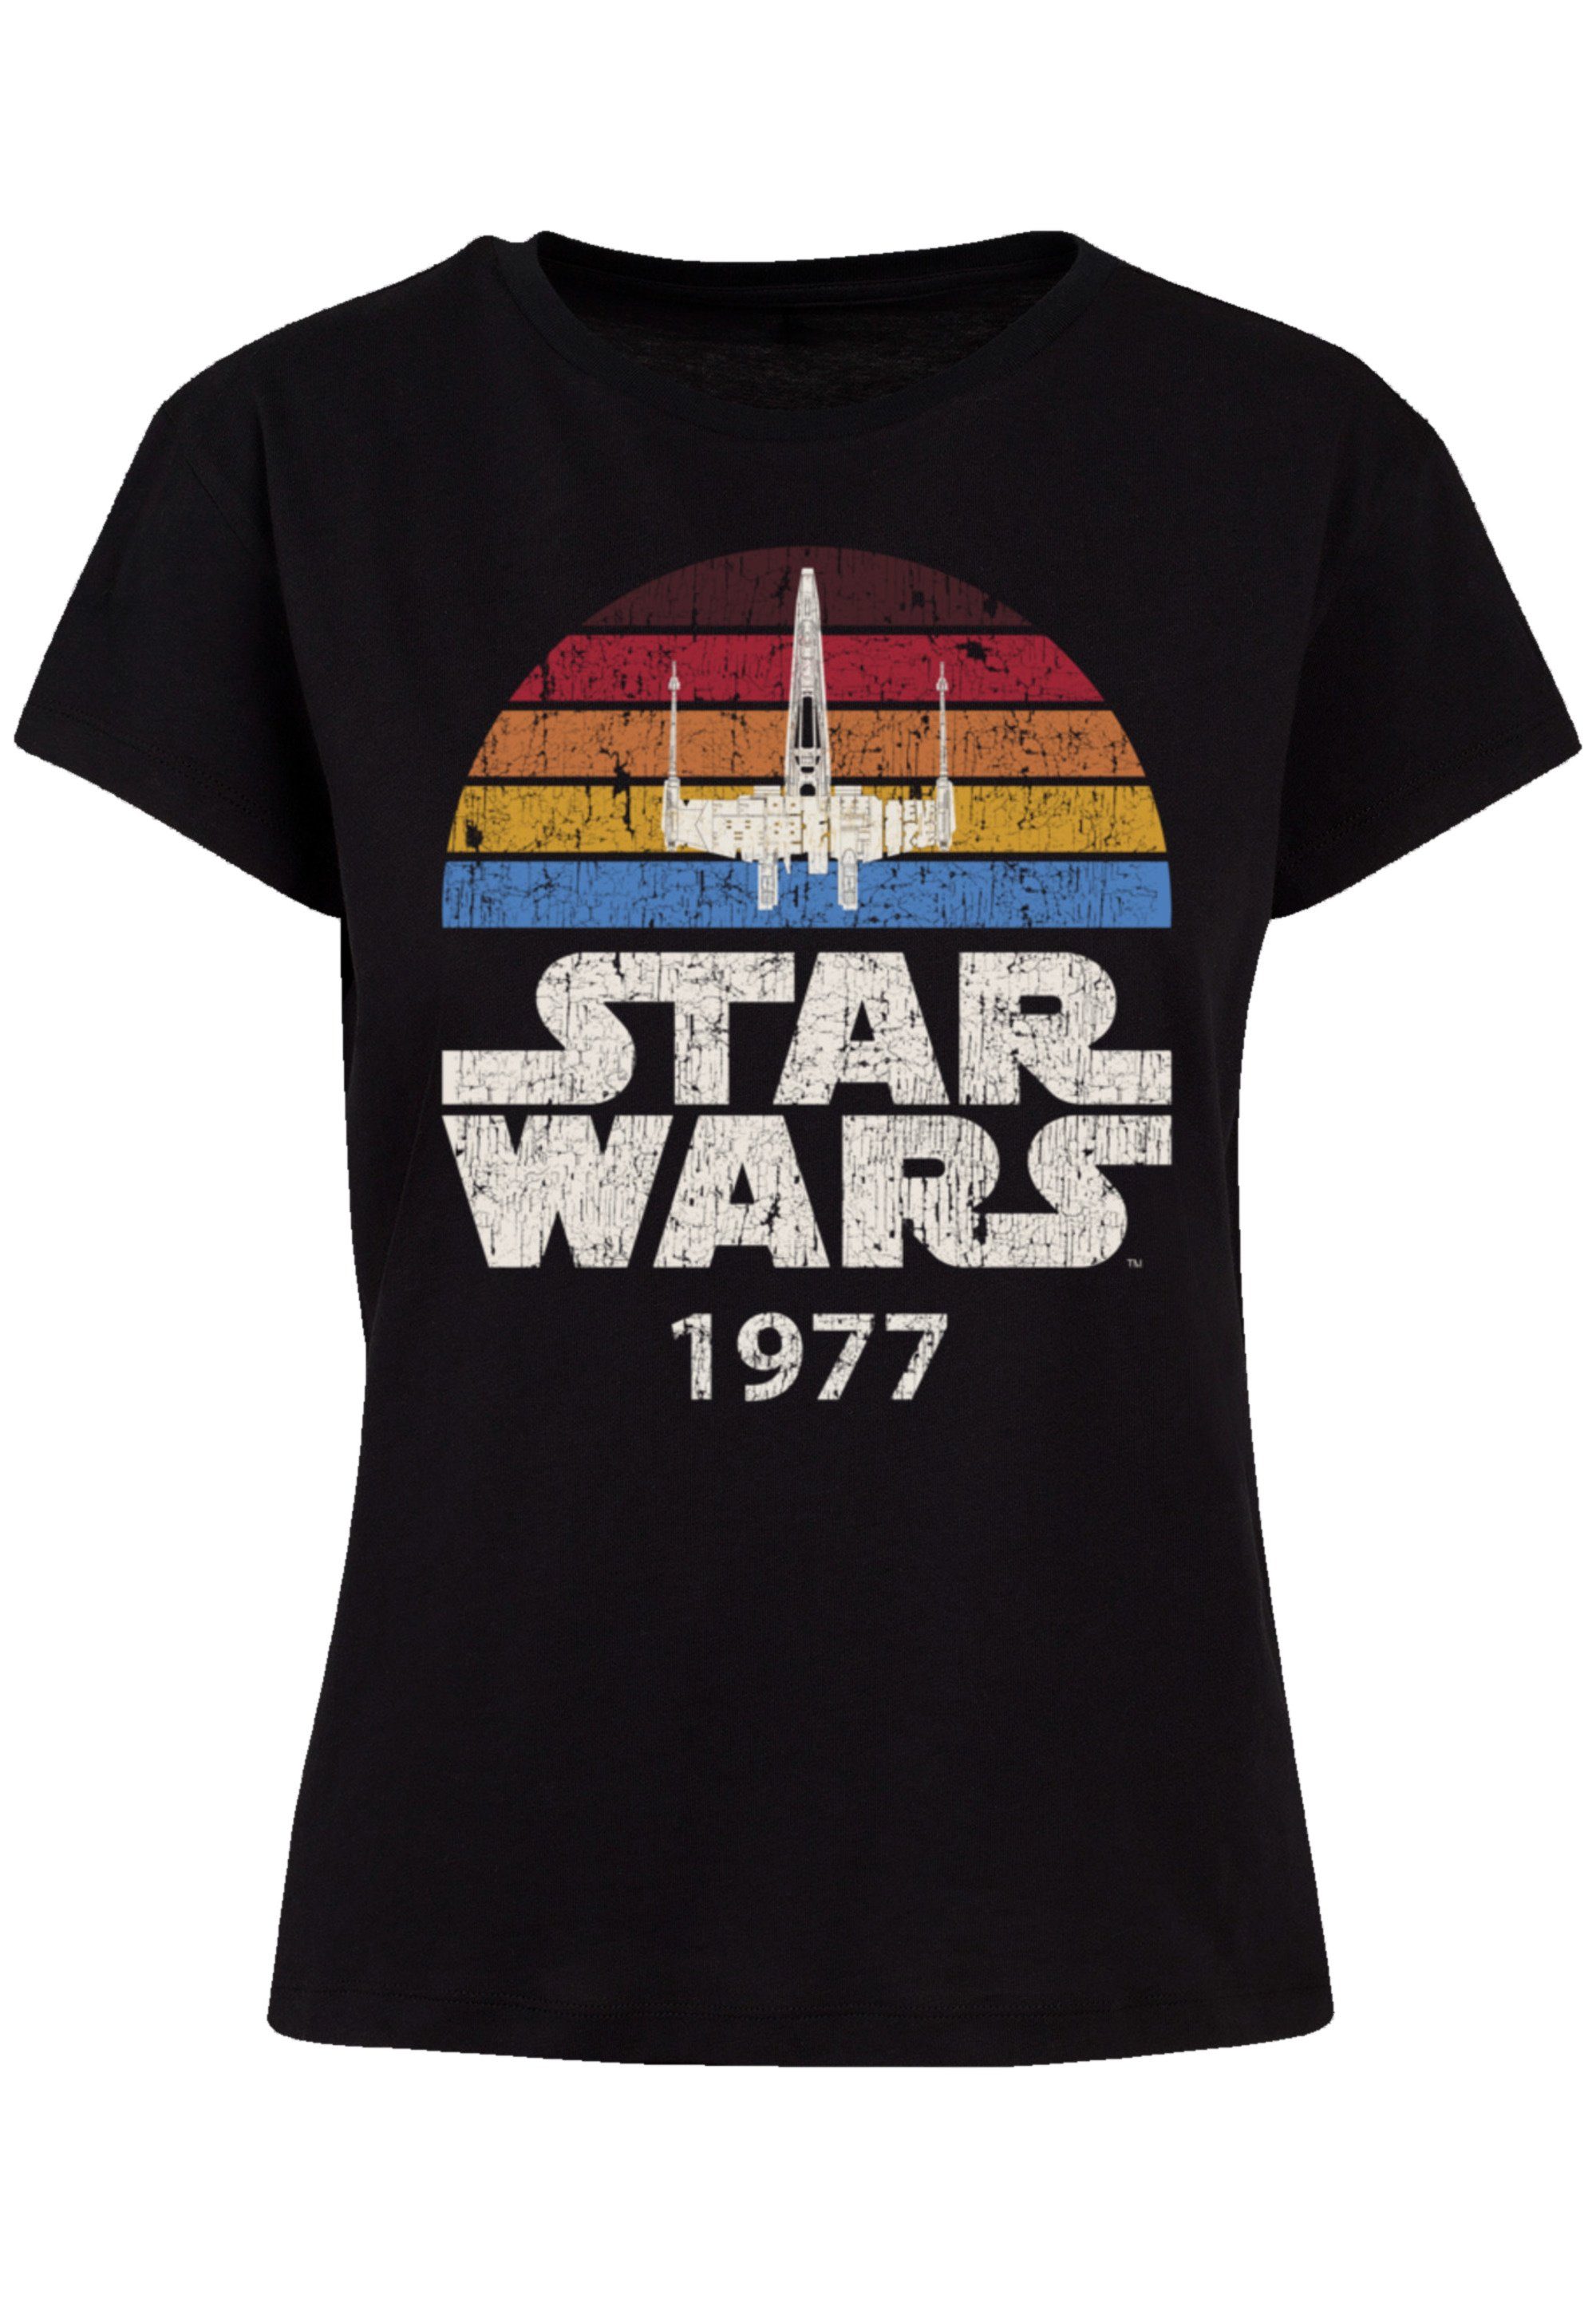 F4NT4STIC T-Shirt Star Wars X-Wing Trip 1977 Premium Qualität, Perfekte  Passform und hochwertige Verarbeitung